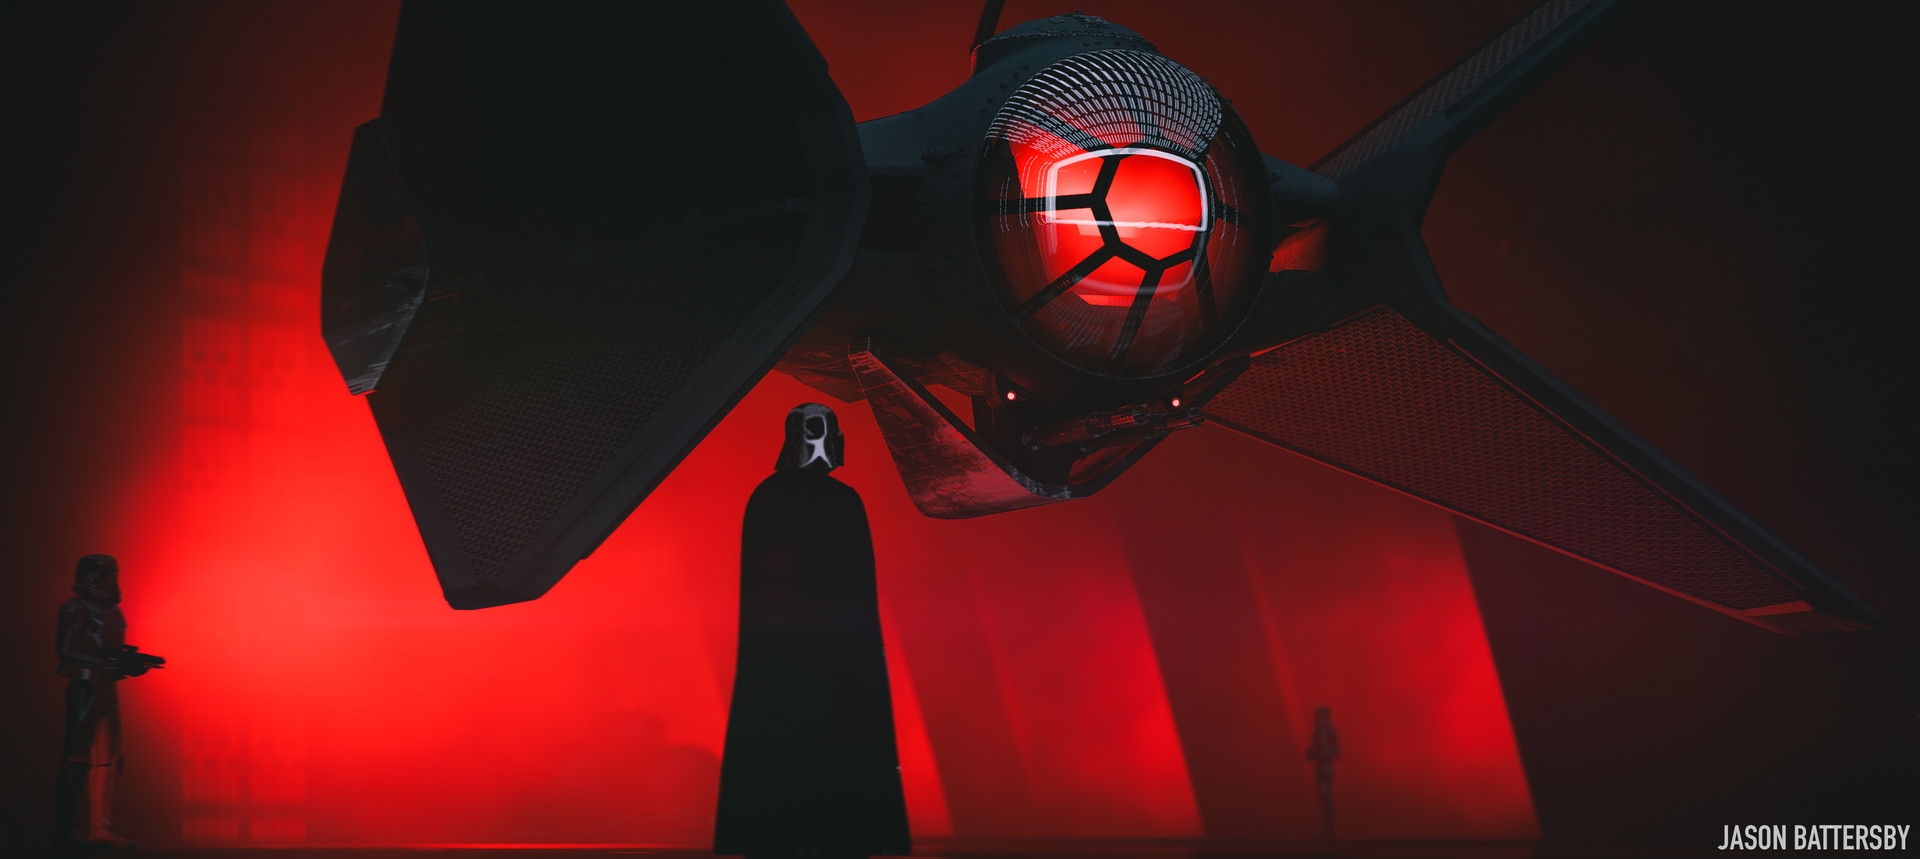 Darth Vader Digital Art Wallpapers